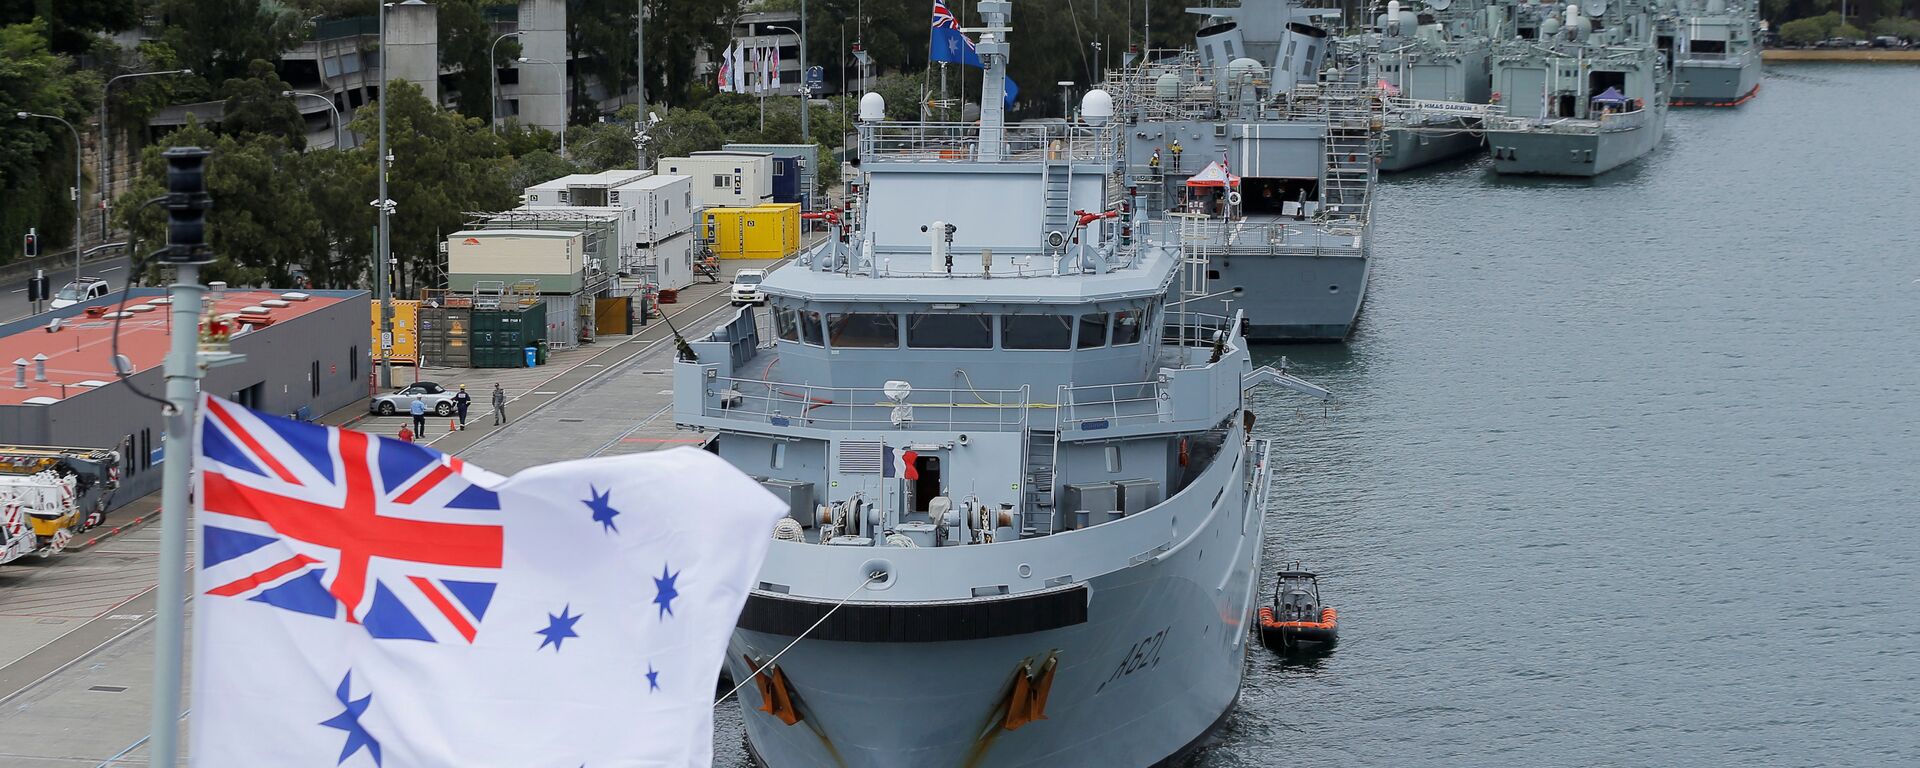 Ảnh tàu hải quân Australia được chụp từ boong tàu HMAS Adelaide trong chuyến thăm của Bộ trưởng Quốc phòng Pháp Jean-Yves Le Drian đến Úc, gặp gỡ Bộ trưởng Quốc phòng Australia Marise Payne tại Sydney, ngày 19 tháng 12 năm 2016. - Sputnik Việt Nam, 1920, 16.09.2019